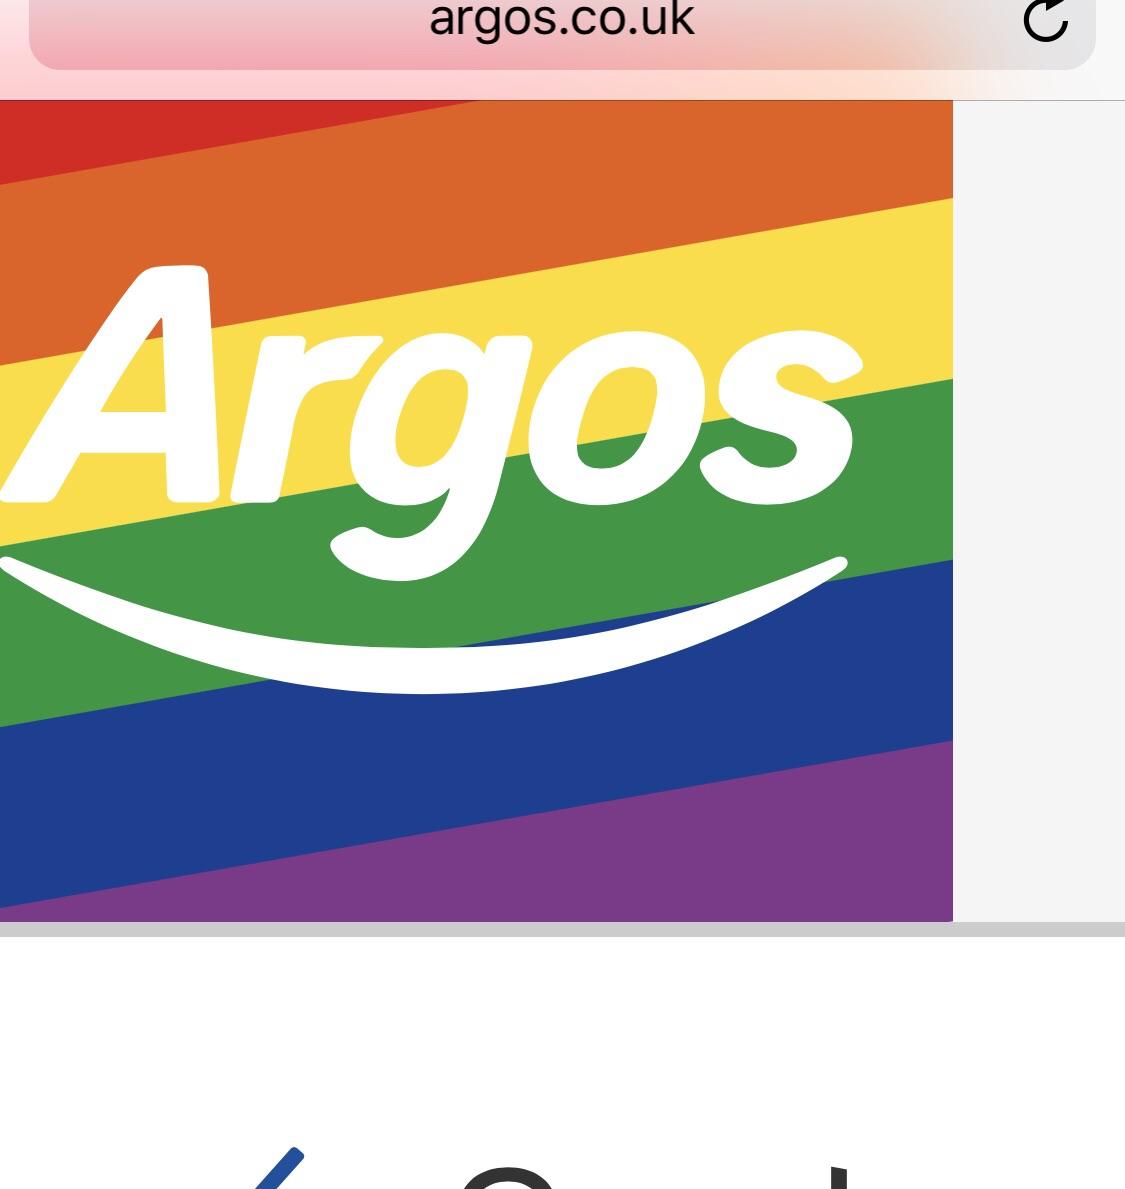 Argos Logo - Argos have got their pride logo going! : lgbt